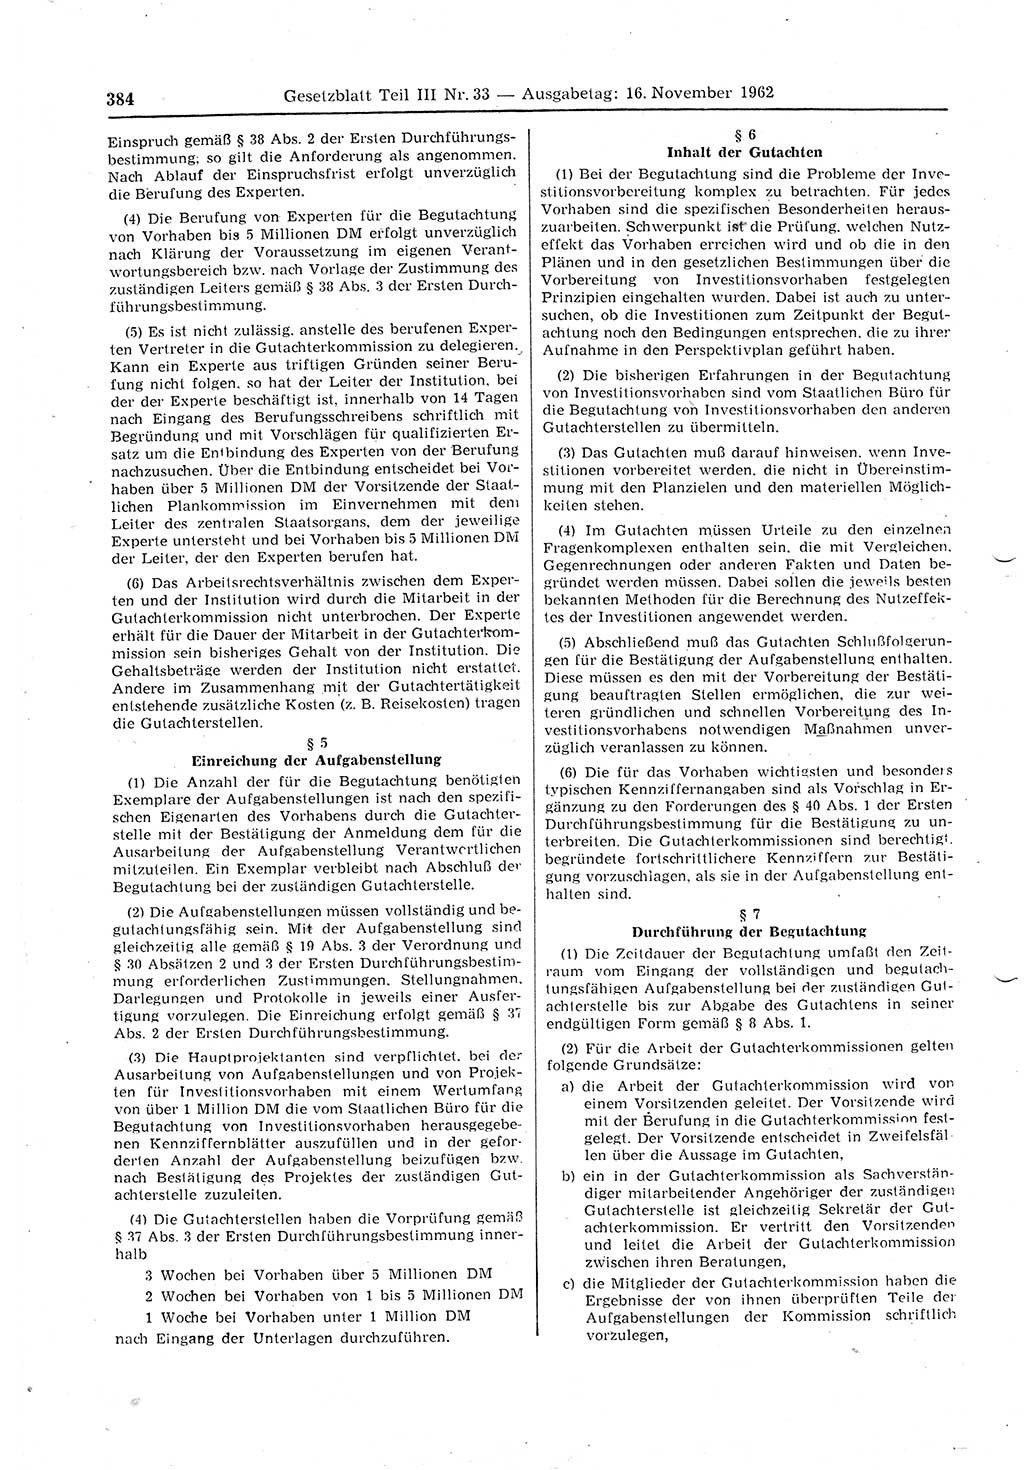 Gesetzblatt (GBl.) der Deutschen Demokratischen Republik (DDR) Teil ⅠⅠⅠ 1962, Seite 384 (GBl. DDR ⅠⅠⅠ 1962, S. 384)